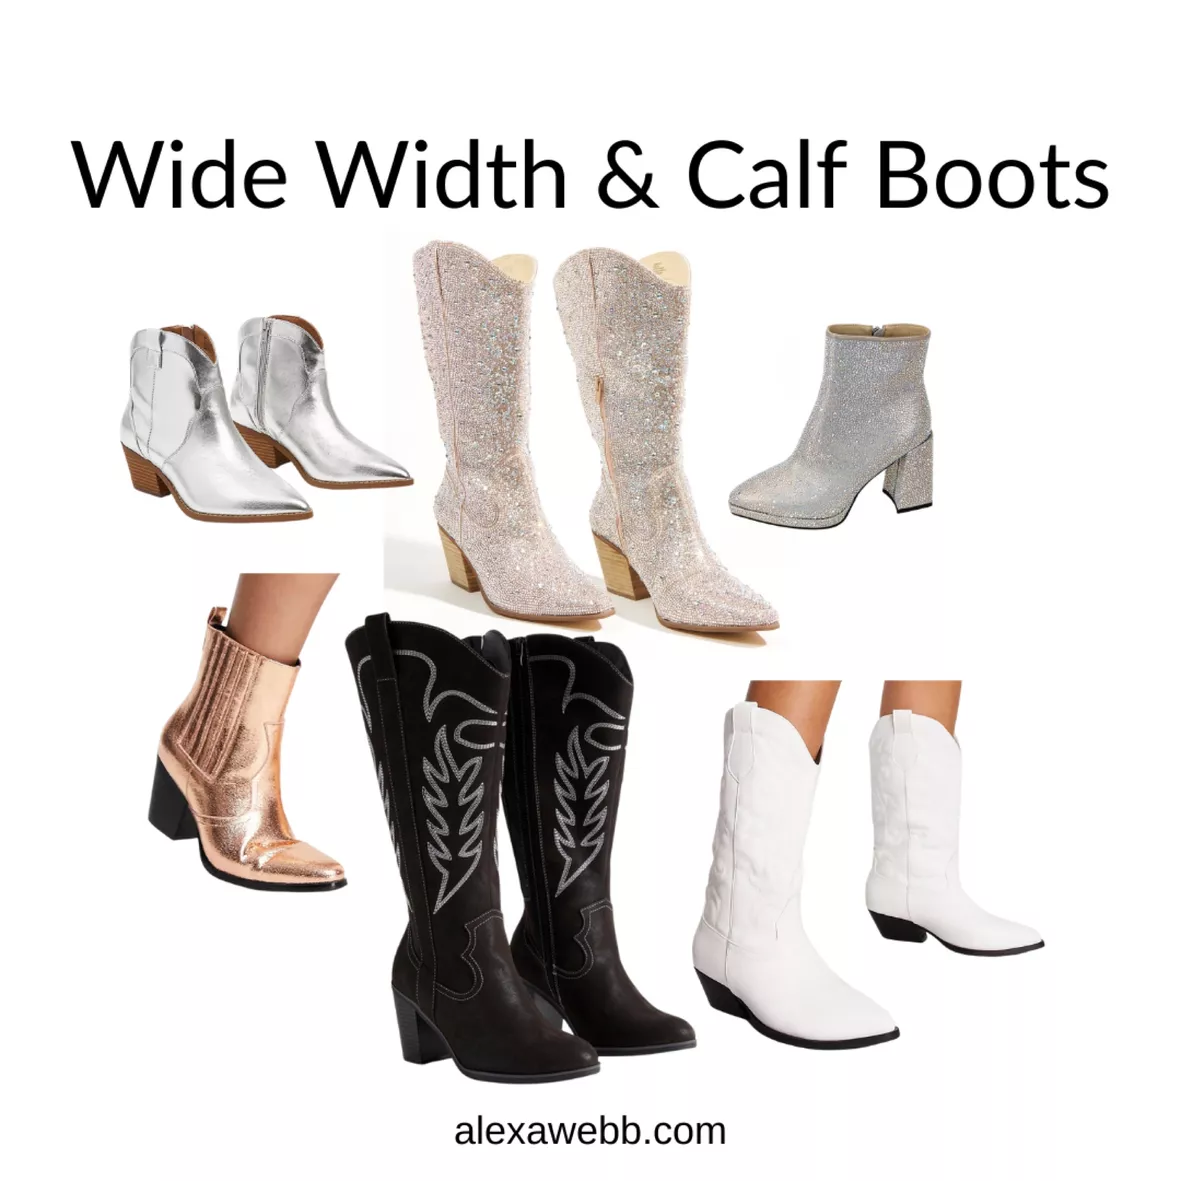 Wide Width Flat Sandals for Women - Alexa Webb